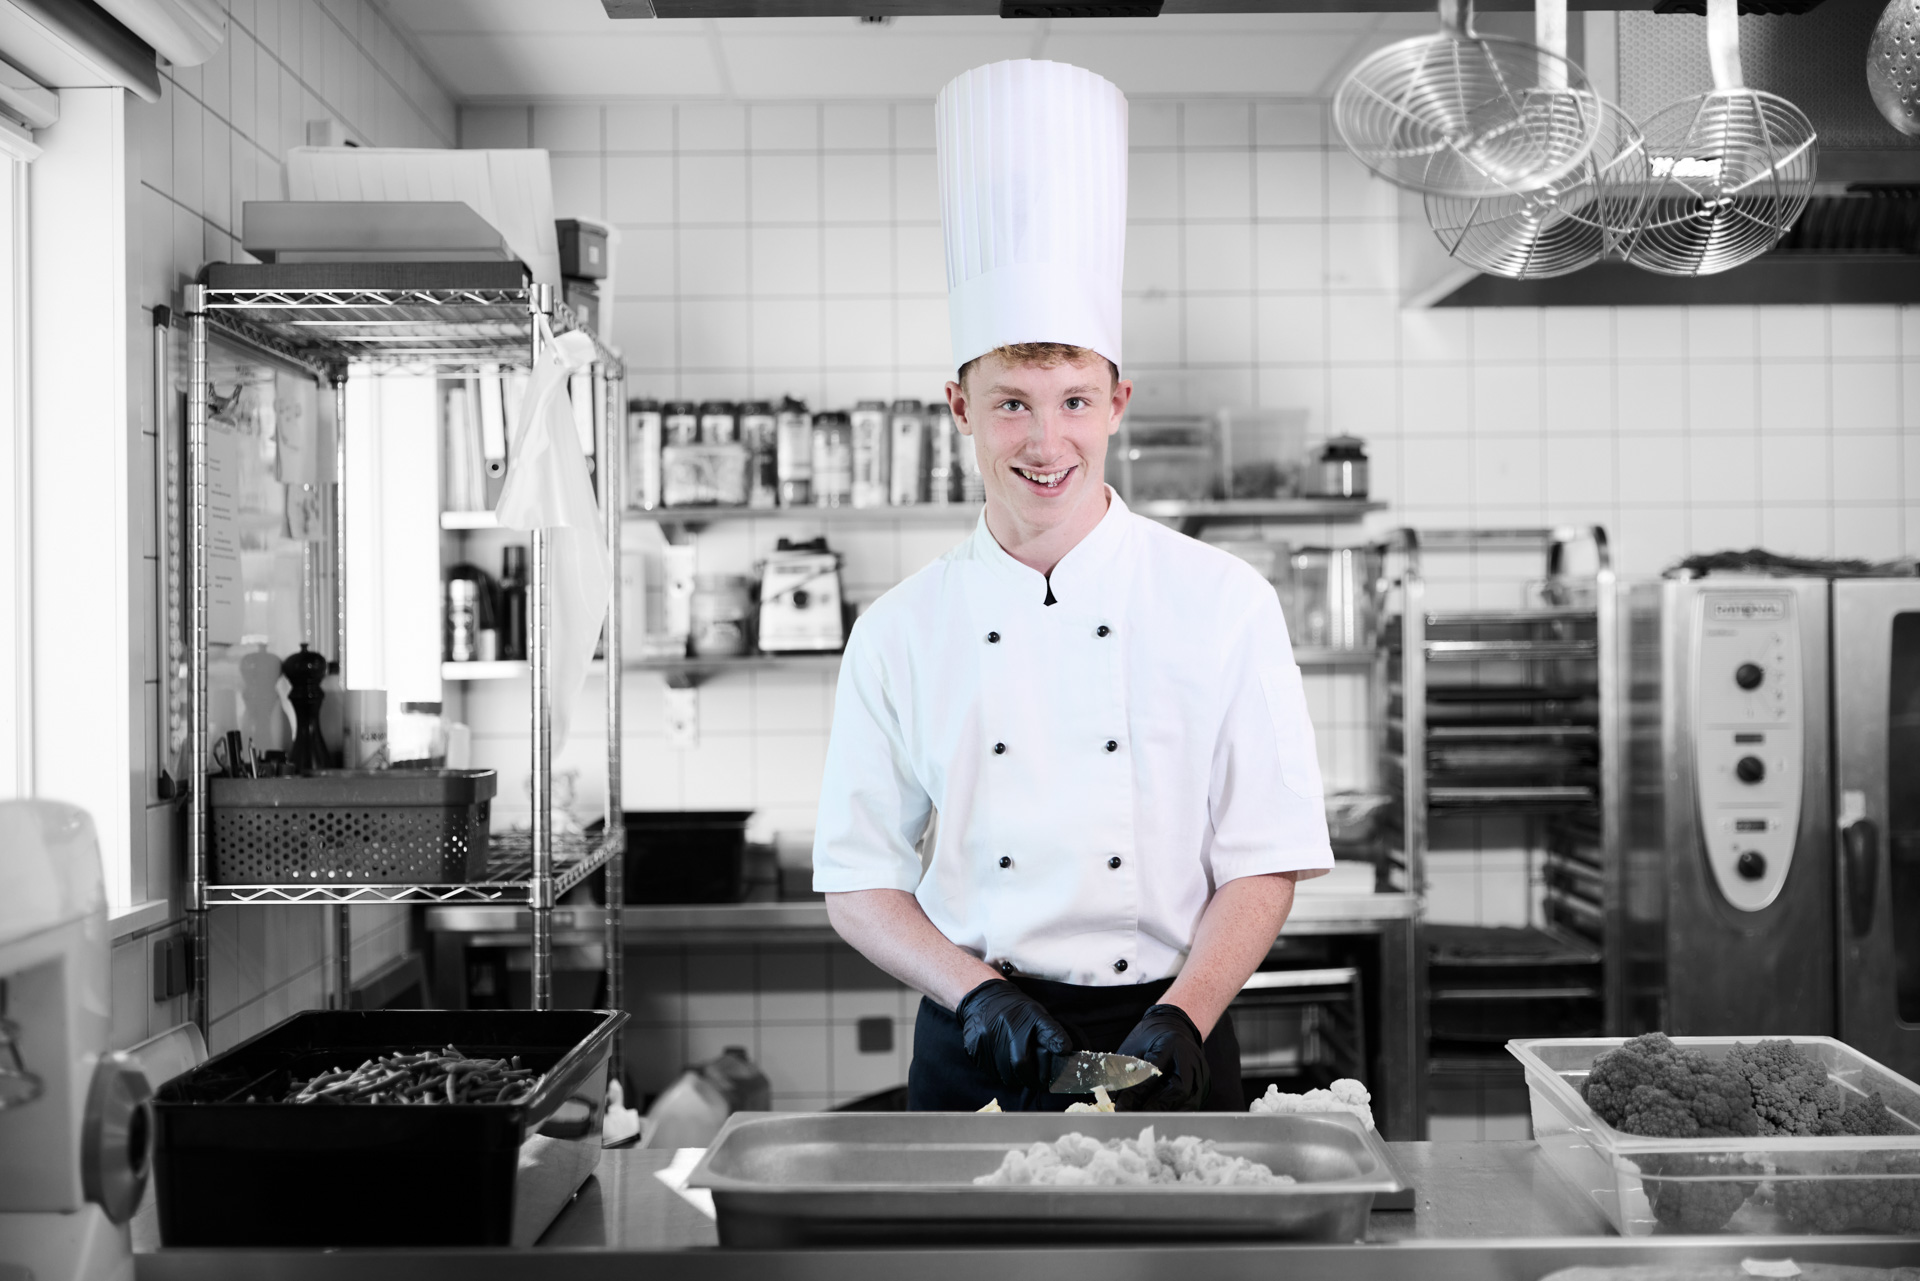 ZBC Fødevarer i Køge - kokkeelev står i køkken og arrangerer mad